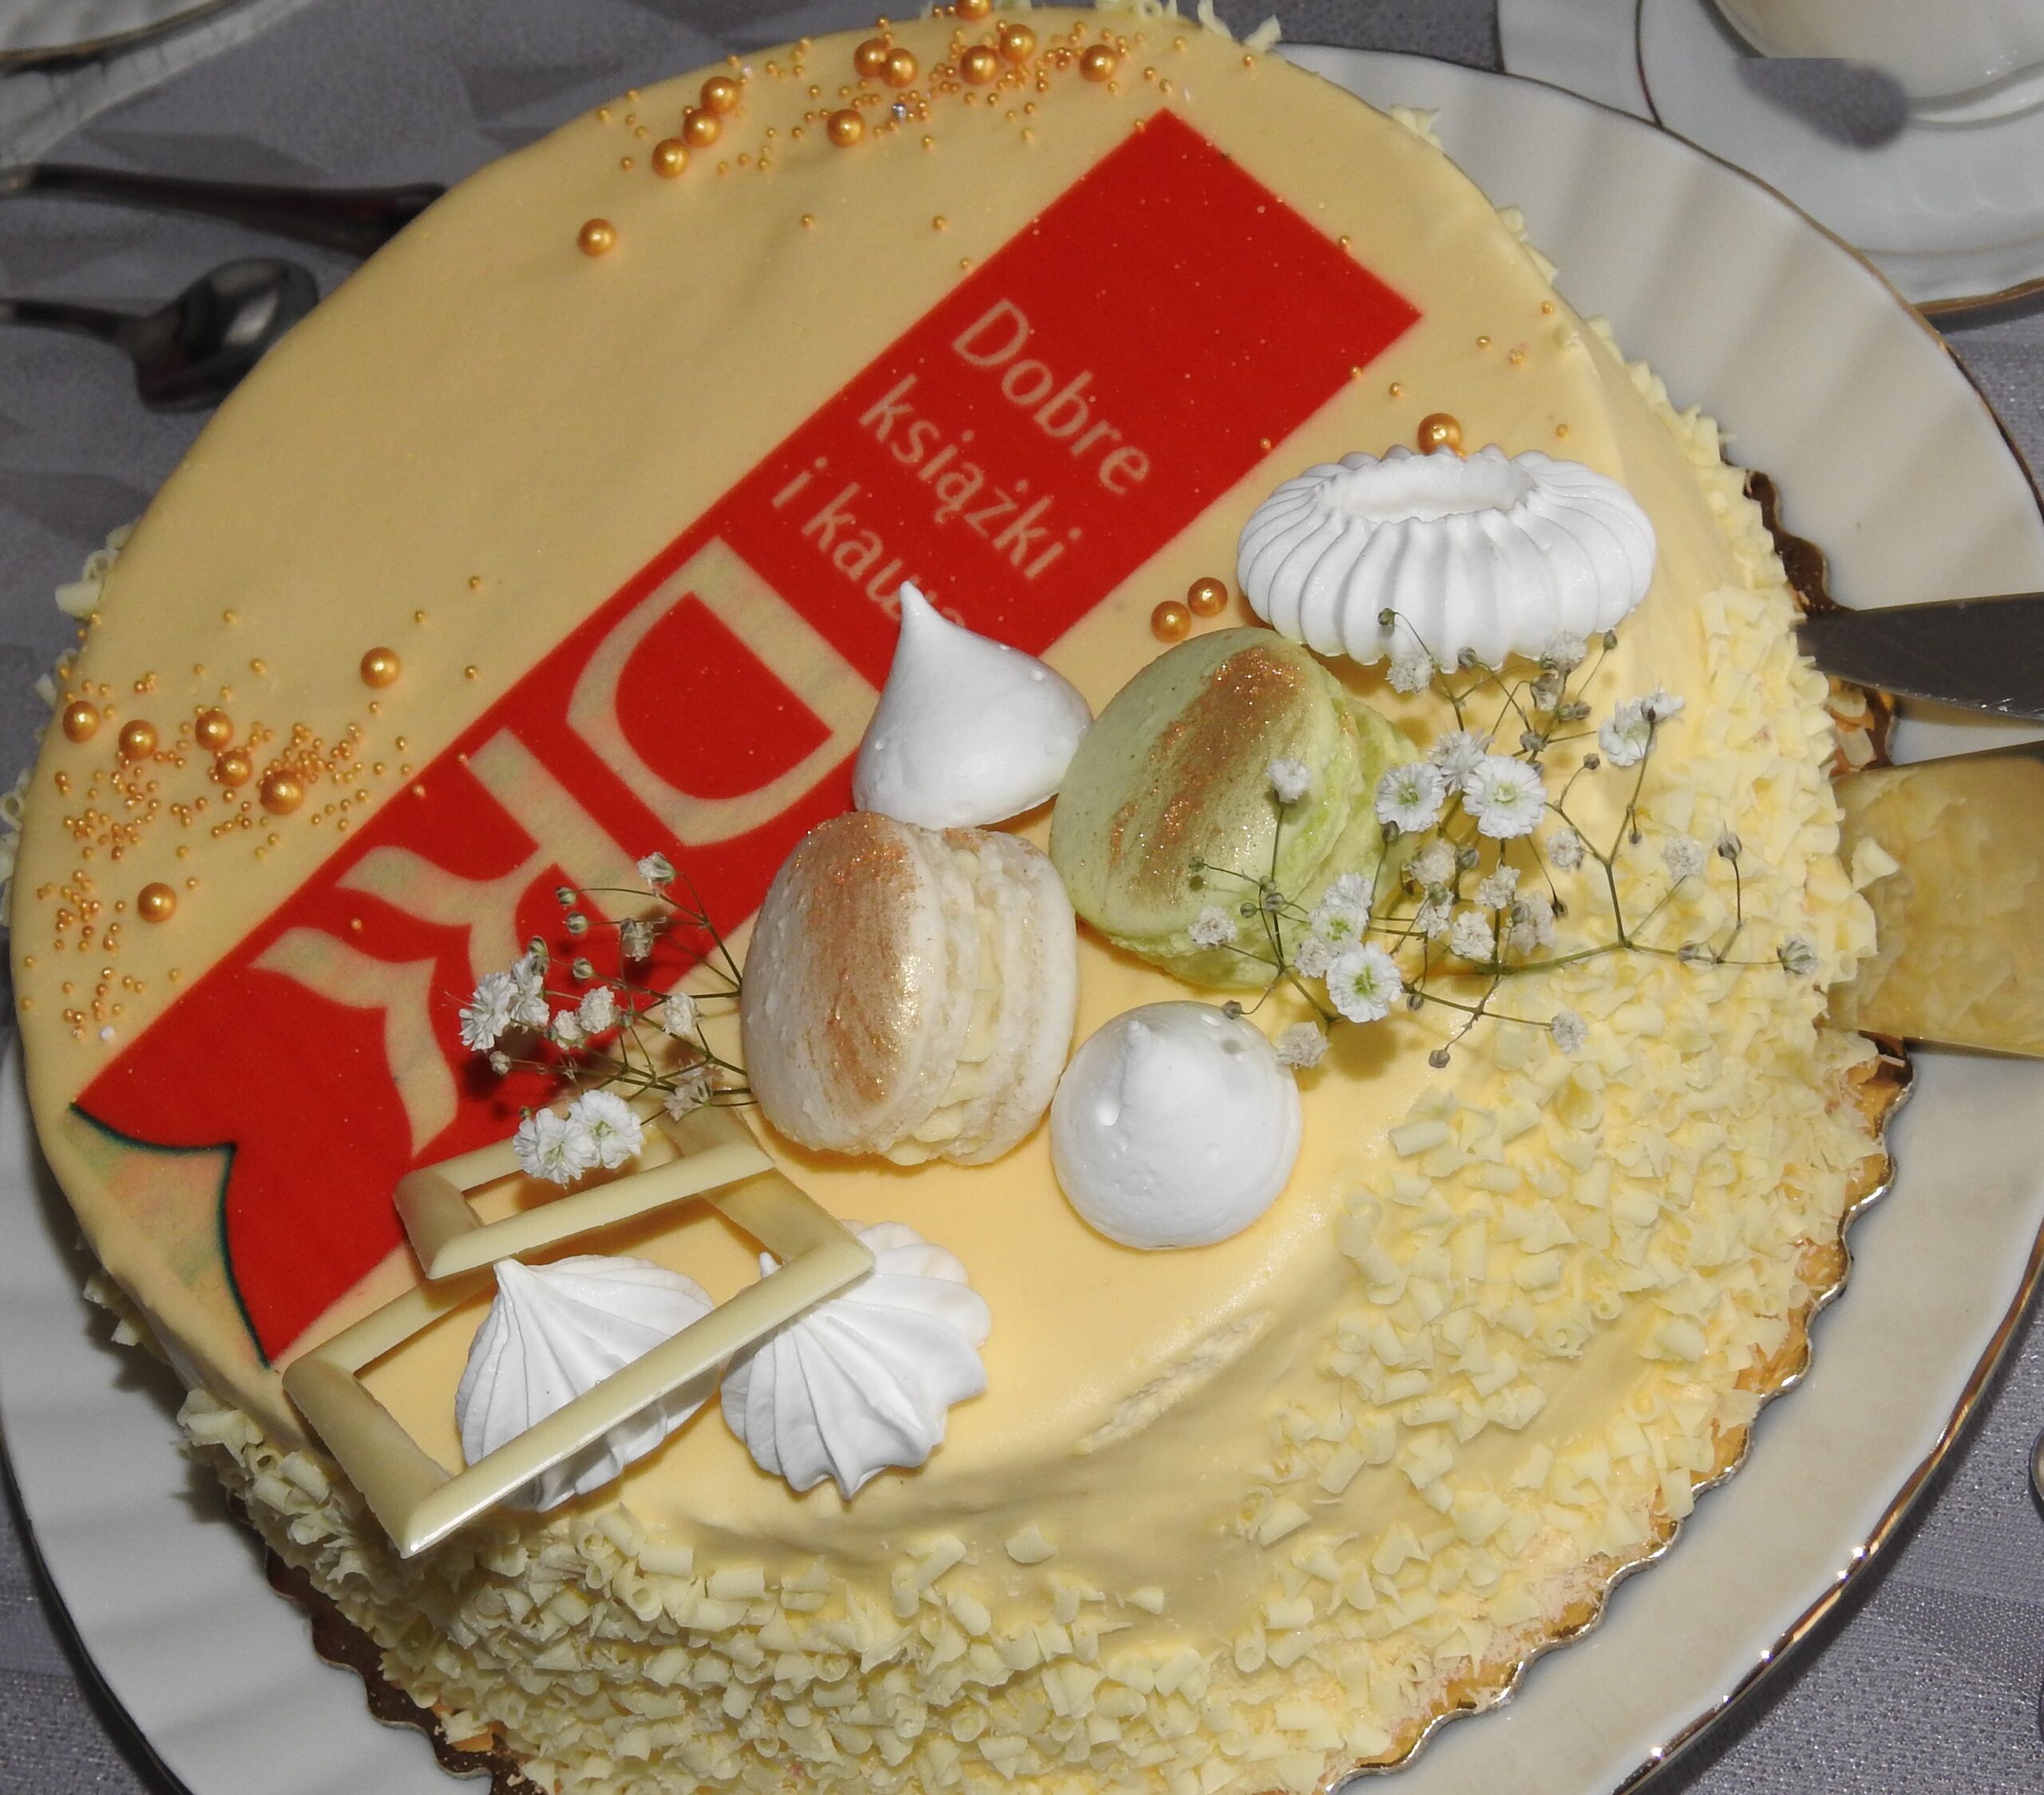 Tort ozdobiony bezami, białą czekoladą, złotymi kuleczkami oraz różową zakładką do ksiązki, na której widnieje napis: Dobre ksiązki i kawa, DKK.